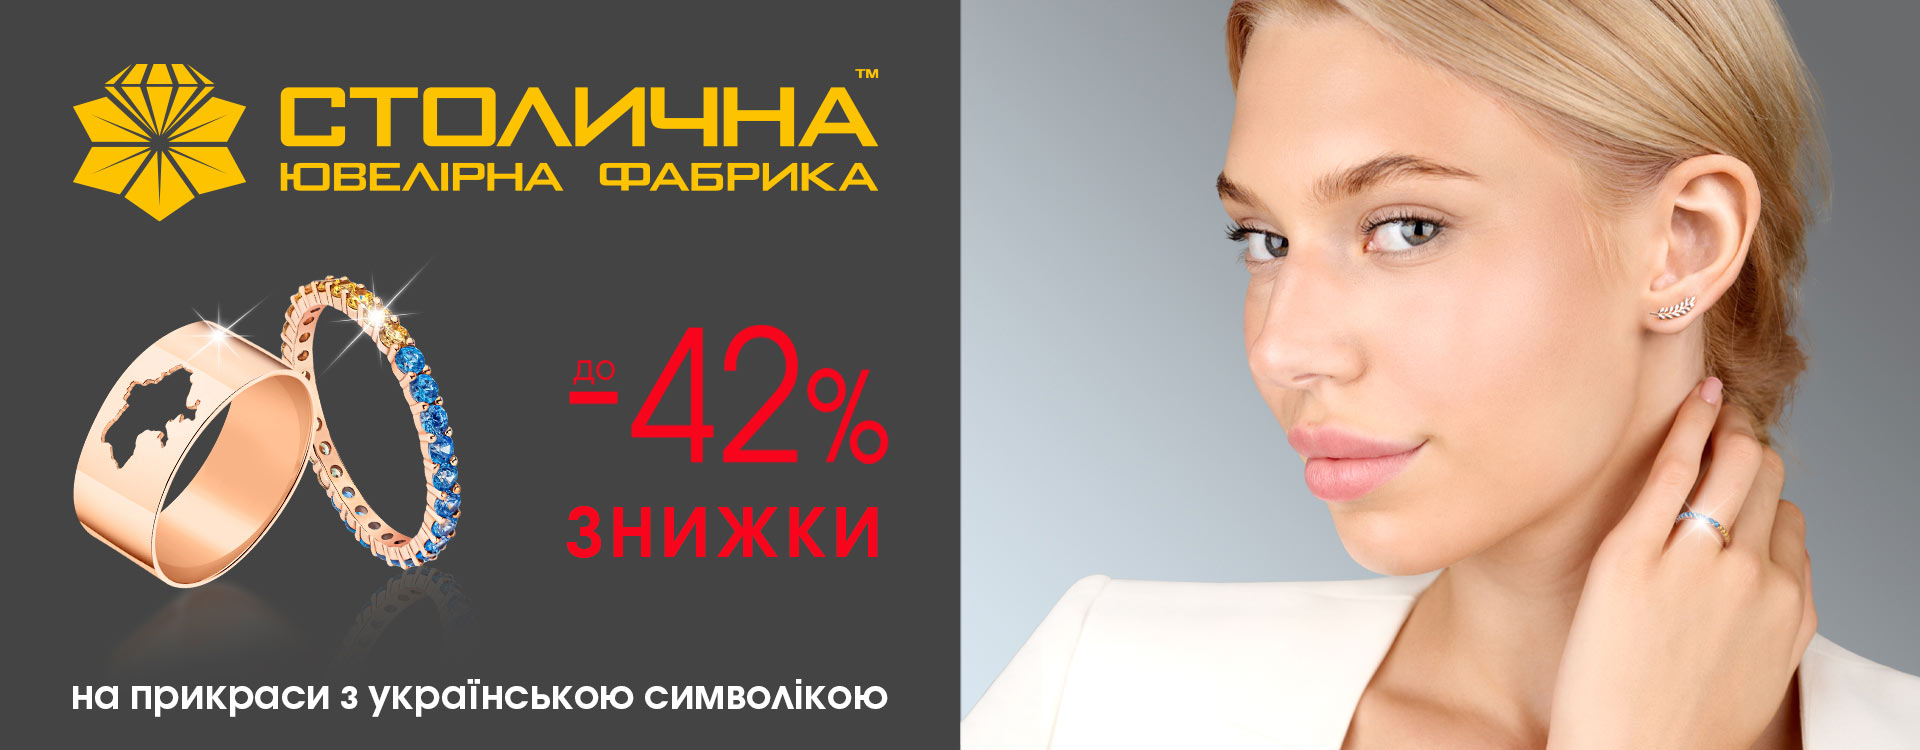 -42% на прикраси з українською символікою